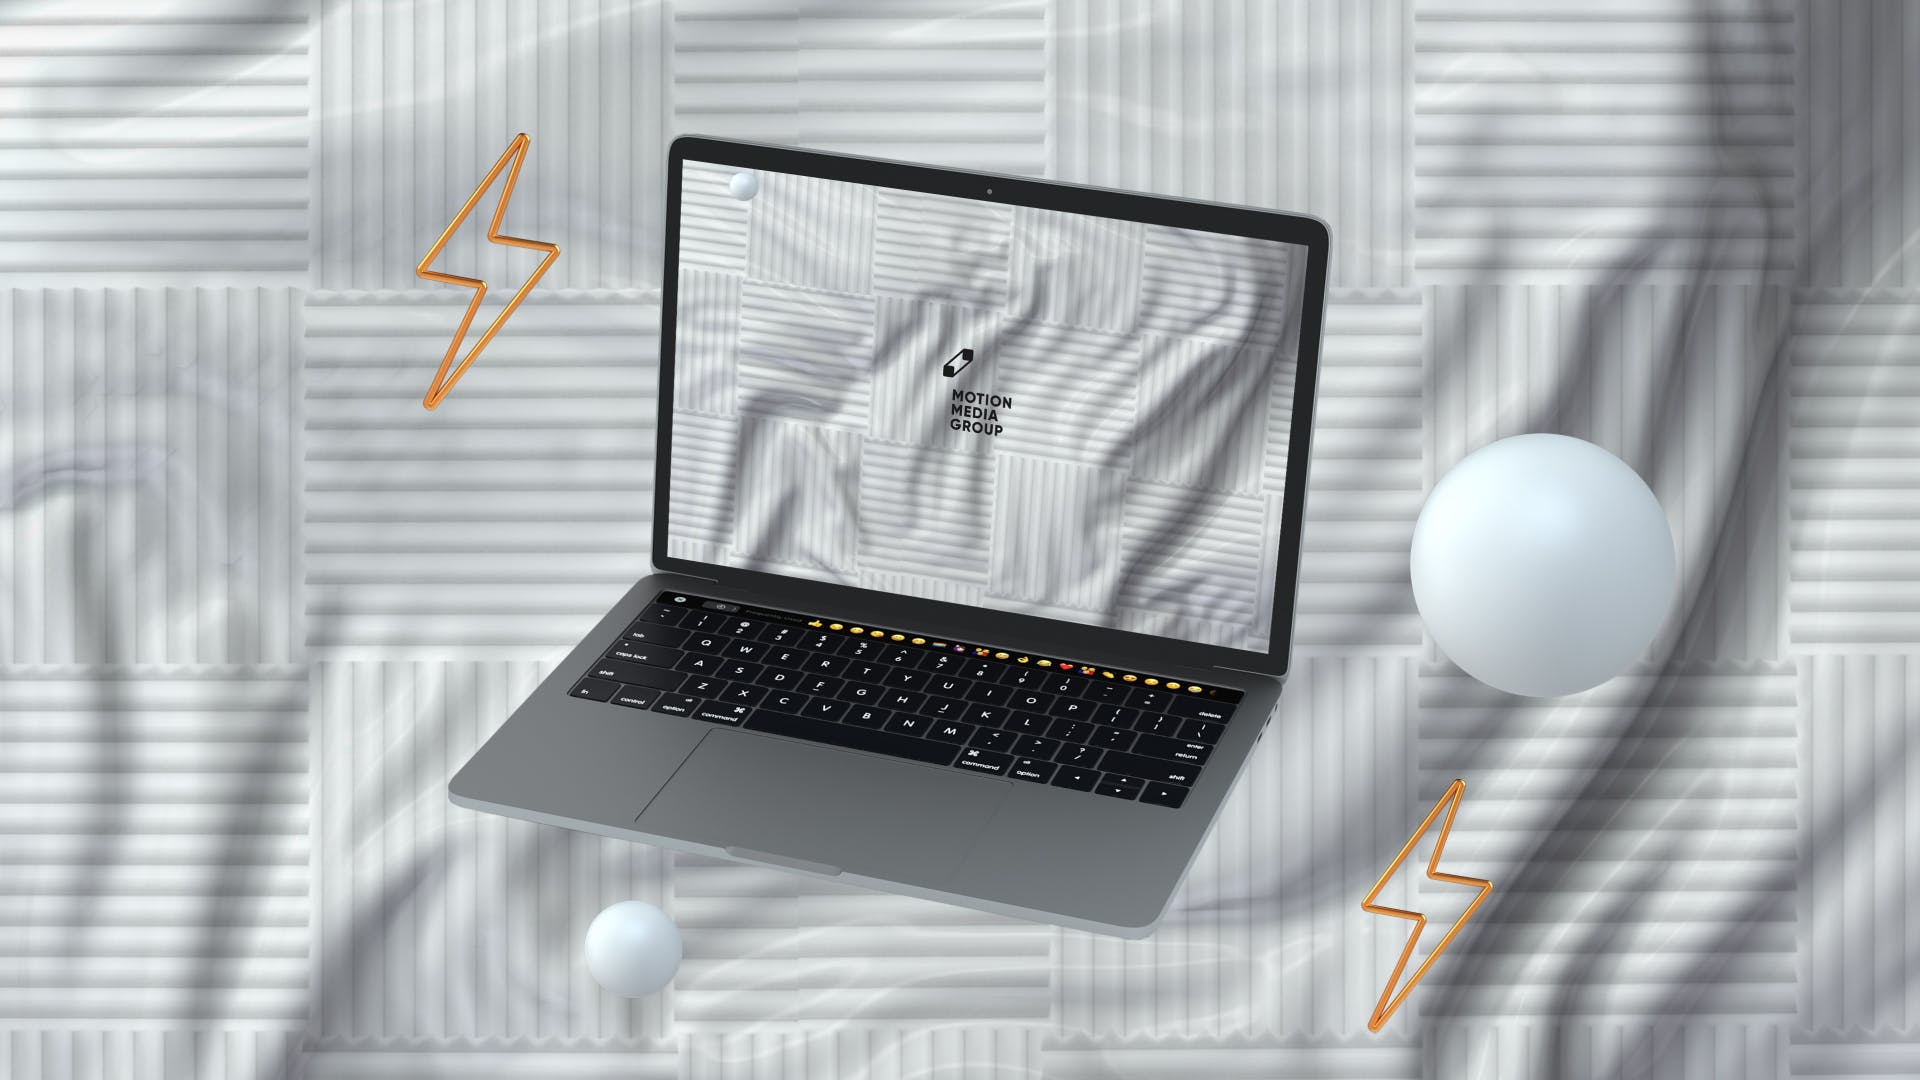 优雅时尚风格3D立体风格笔记本电脑屏幕预览蚂蚁素材精选样机 10 Light Laptop Mockups插图(5)